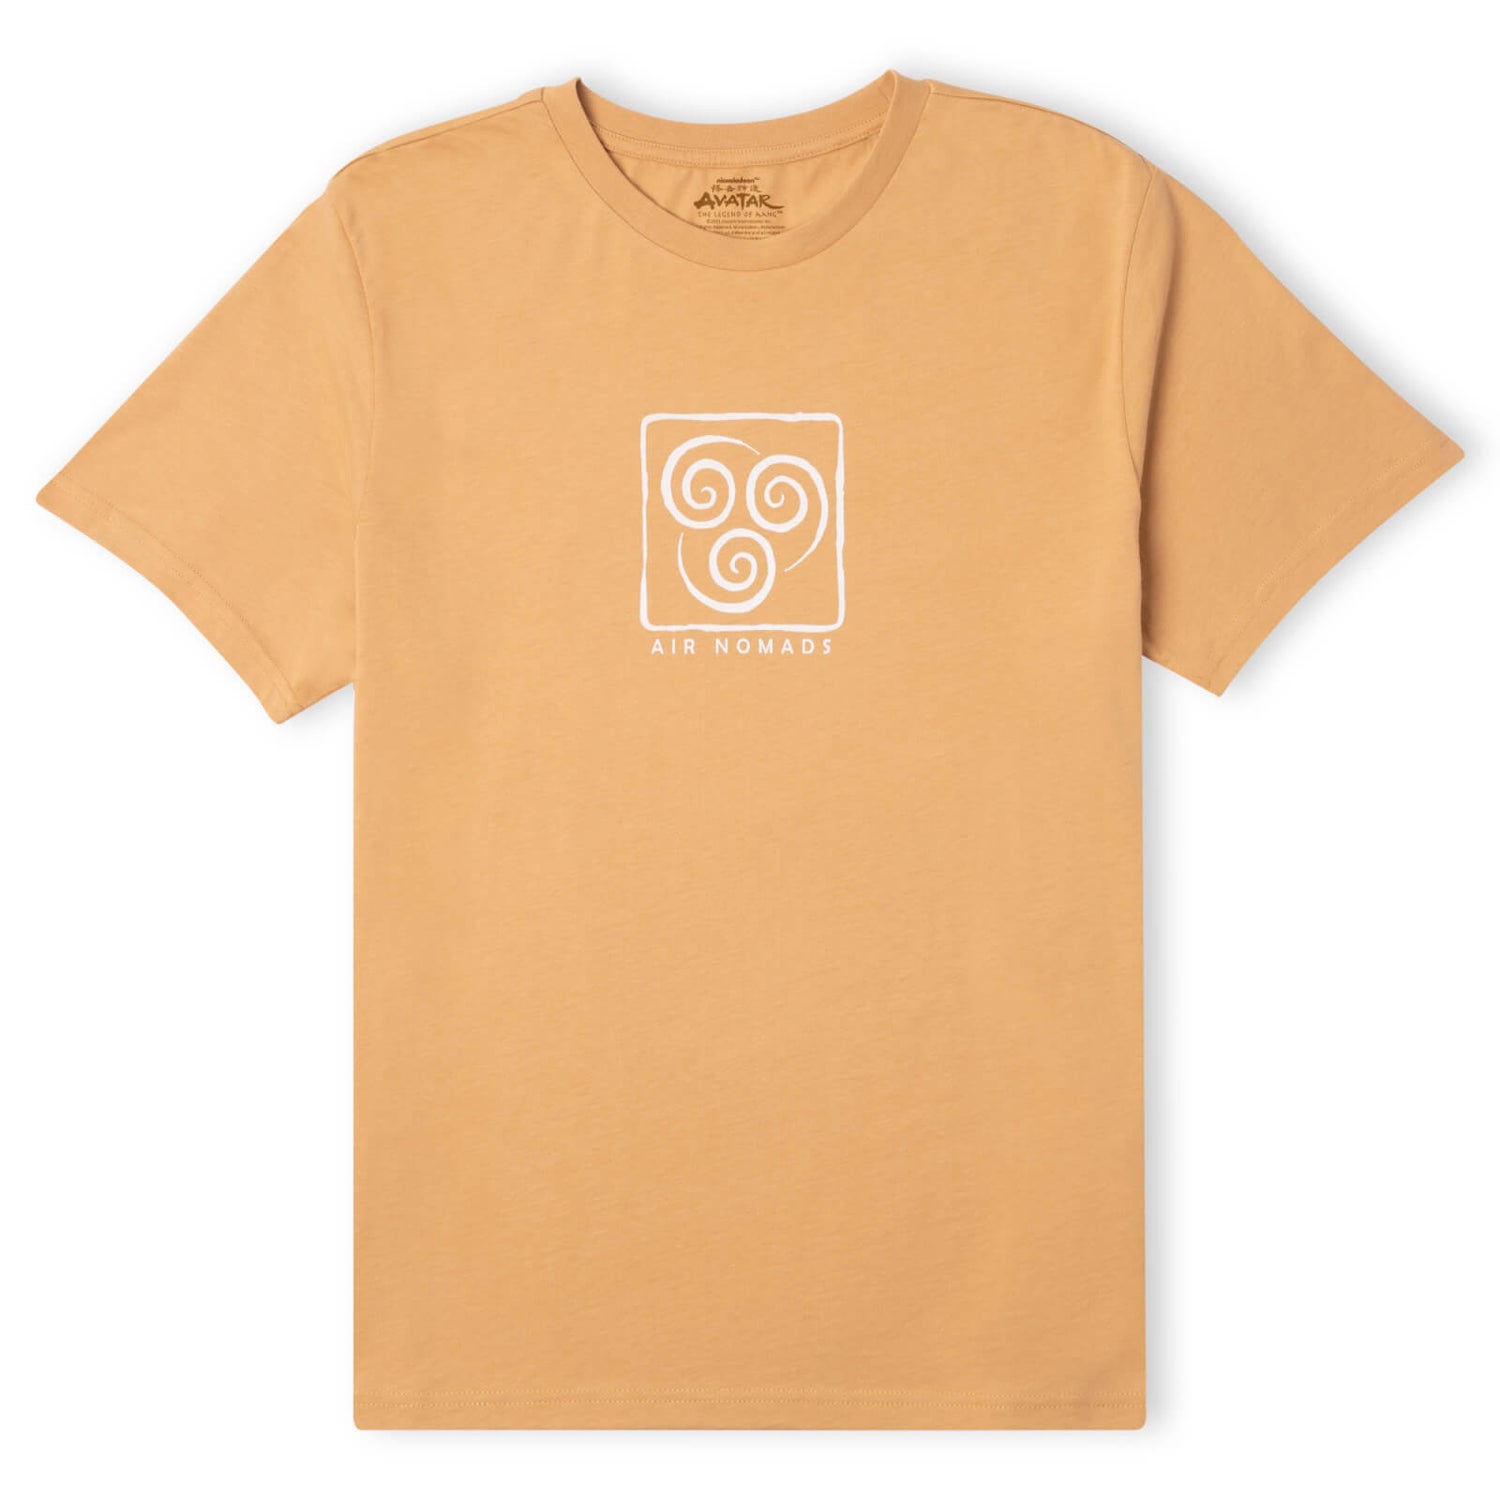 Avatar Air Nomads Unisex T-Shirt - Tan